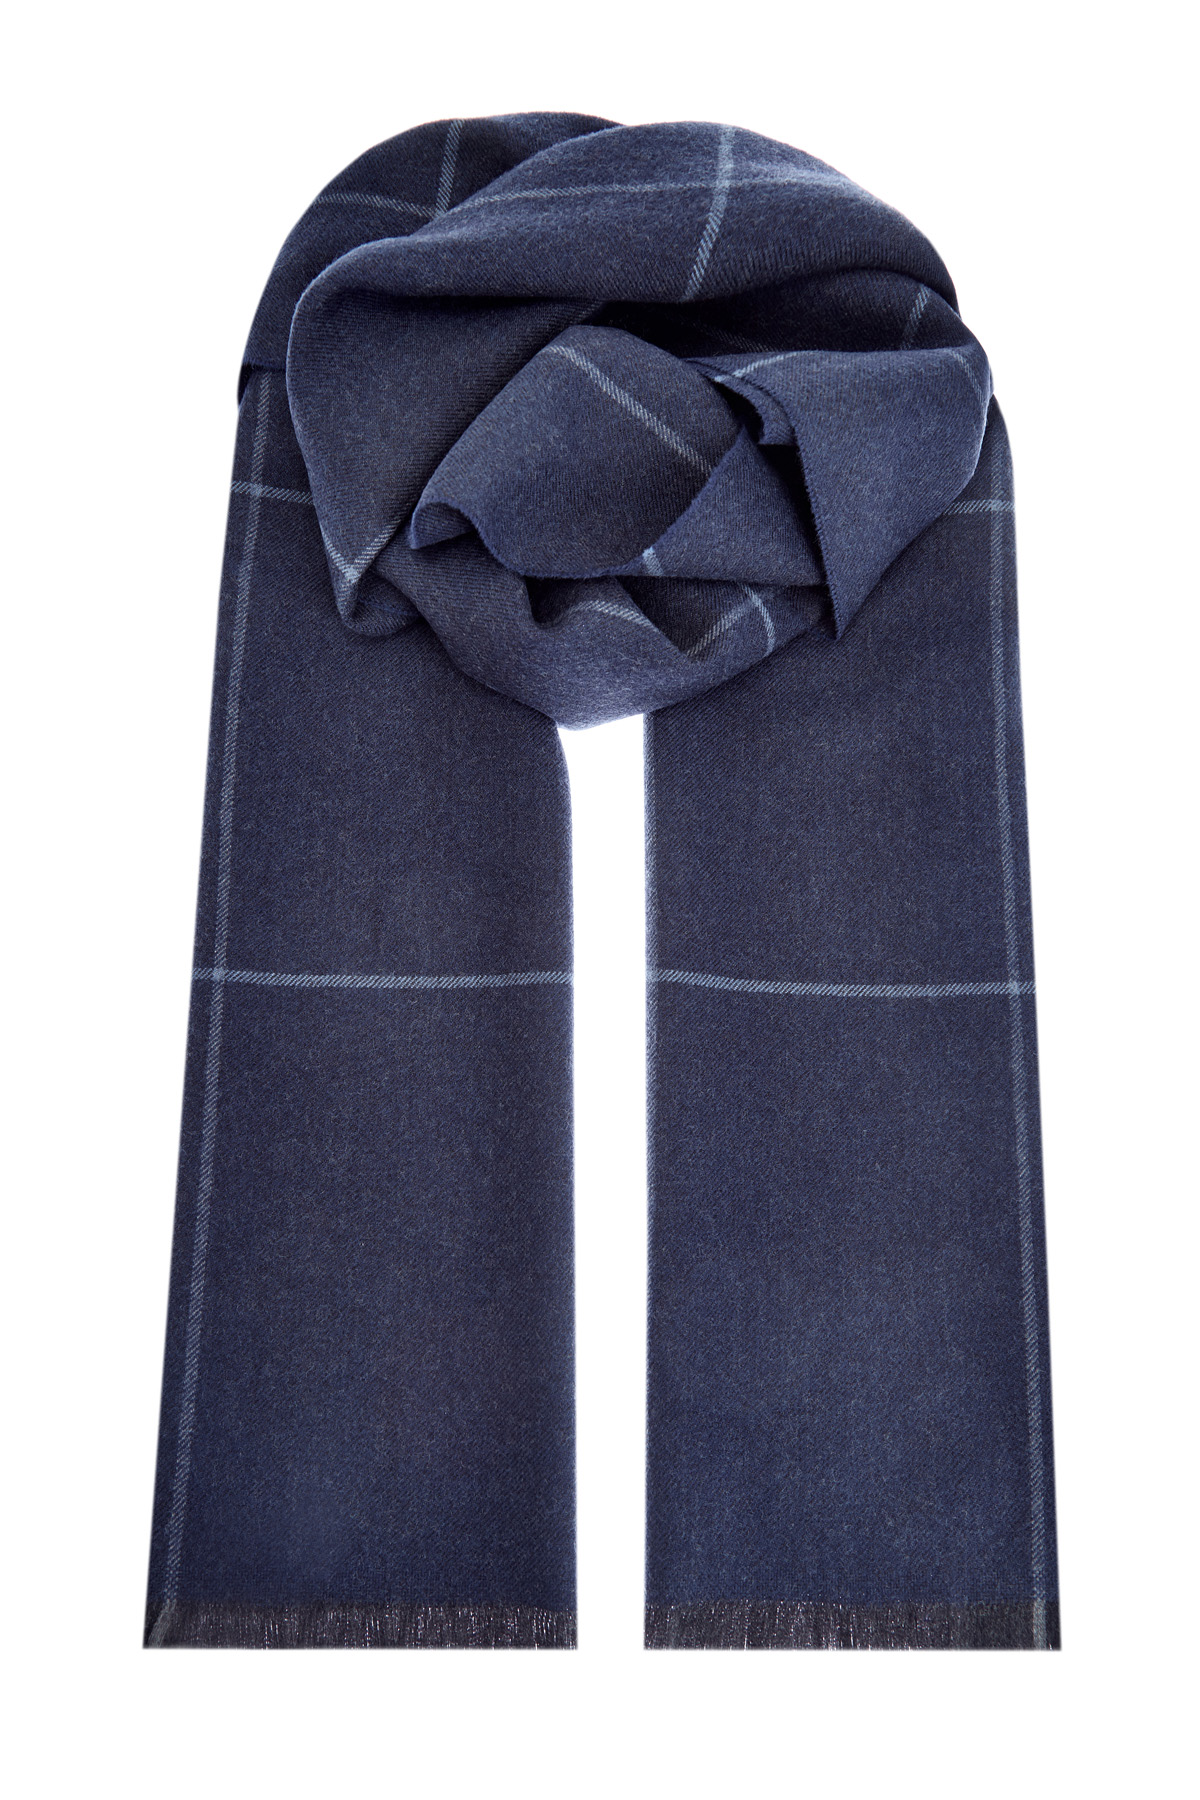 Теплый шерстяной шарф в клетку BERTOLO CASHMERE, цвет синий, размер 5.5;6;6.5;7;7.5;8.5;9;10;8